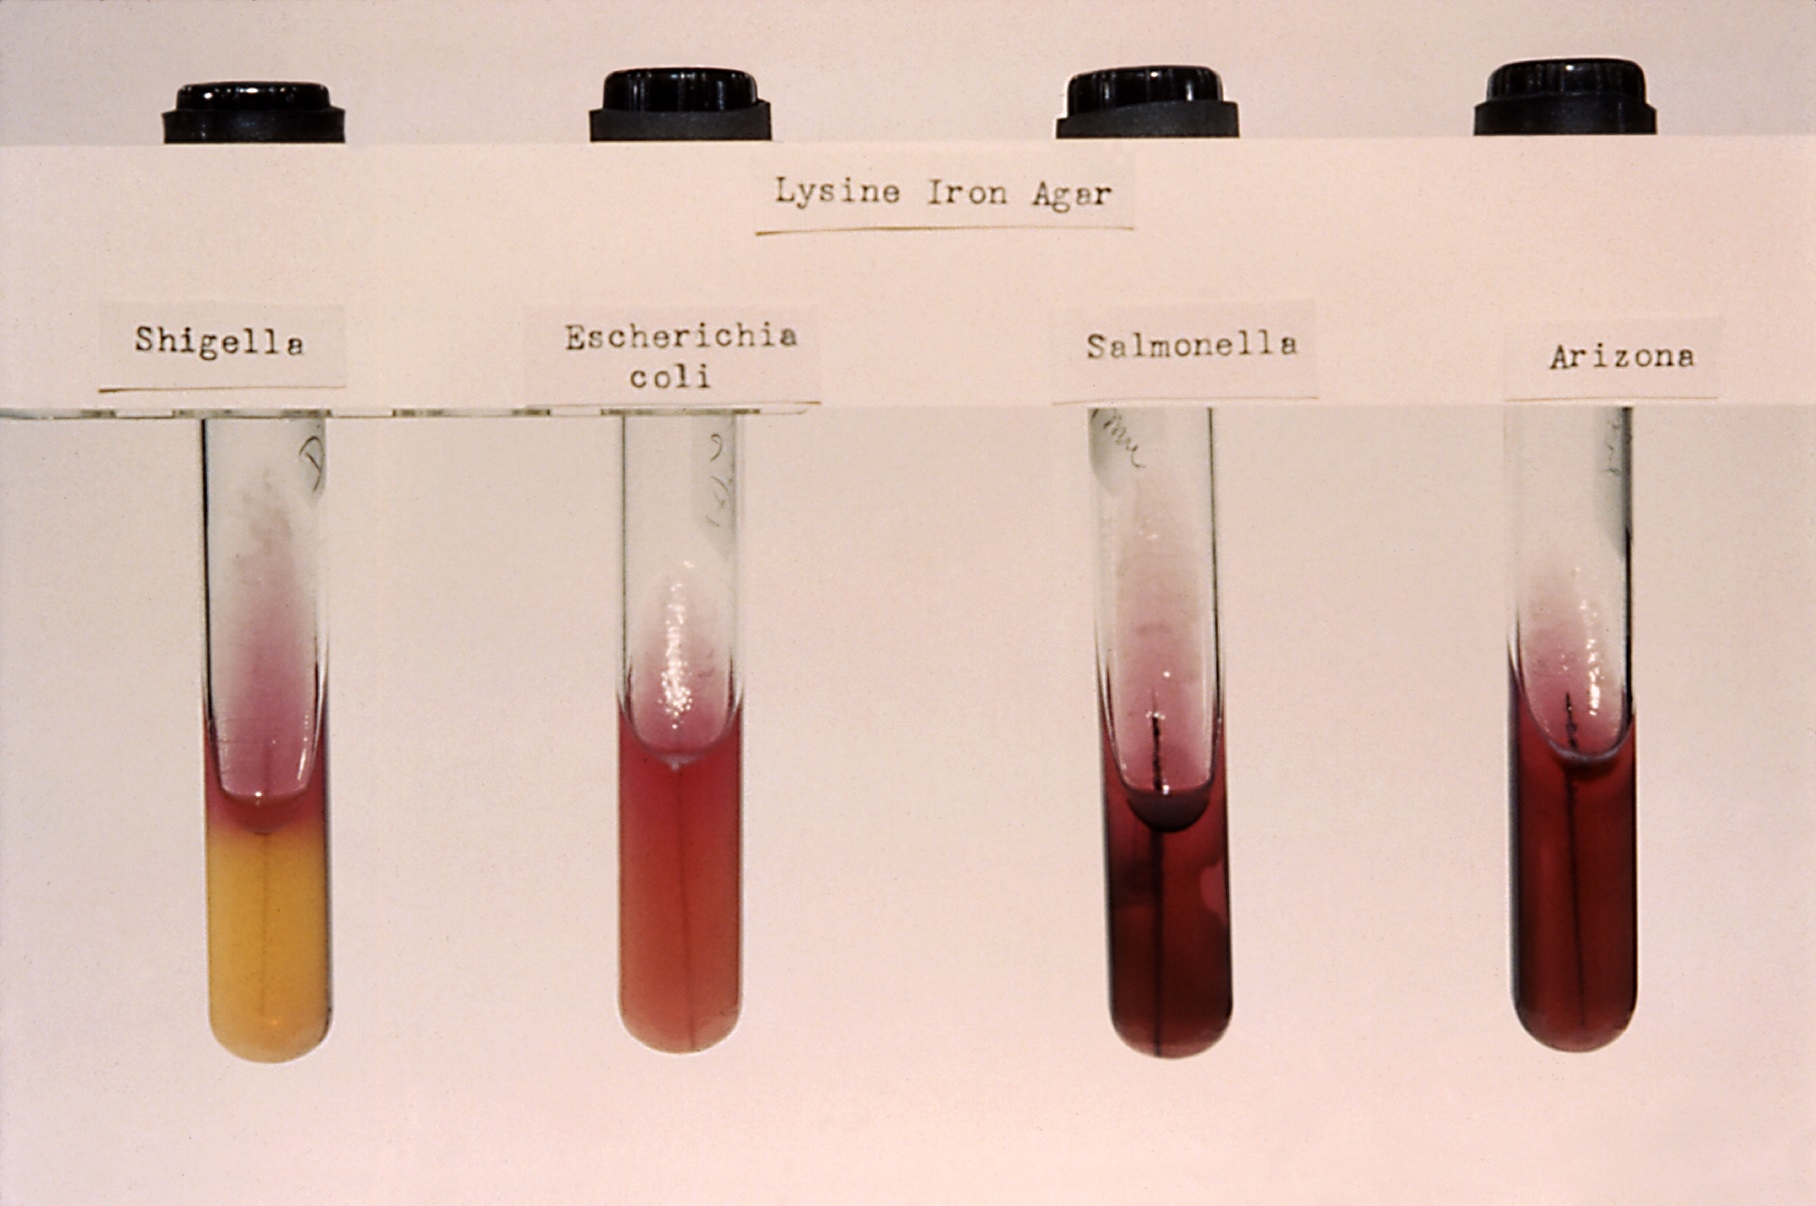 Foto von vier mit Agar gefüllten Reagenzgläsern, die mit verschiedenen Bakterien angeimpft wurden und daraufhin Färbungen von Gelb bis Rostrot zeigen.